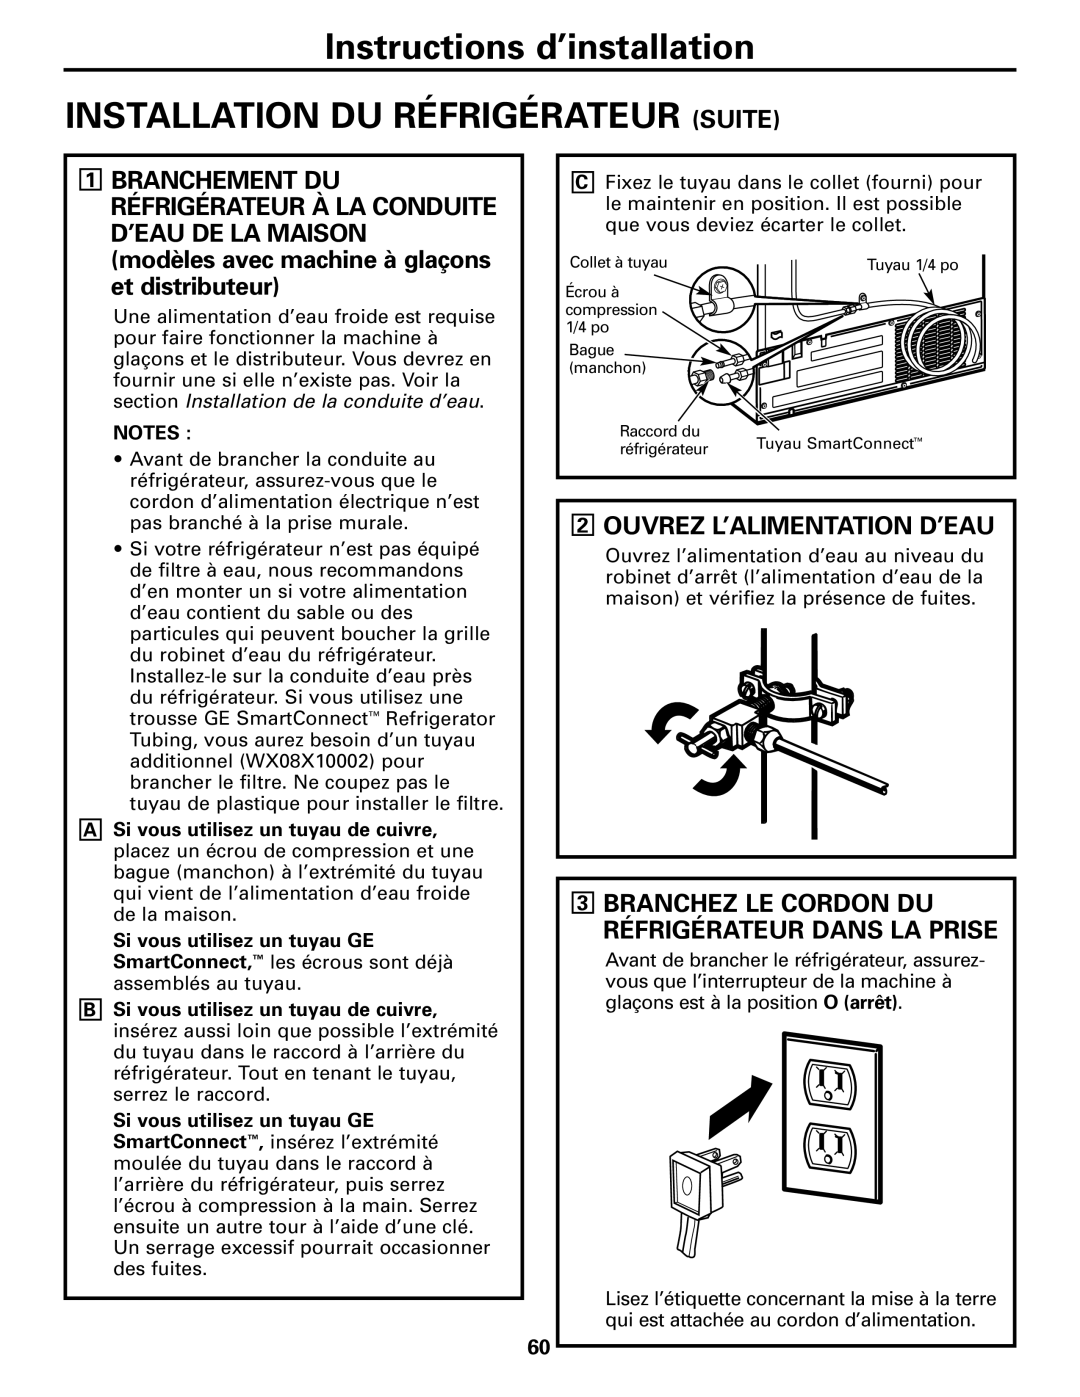 GE Monogram 23 Installation Du Réfrigérateur Suite, 2OUVREZ L’ALIMENTATION D’EAU, Instructions d’installation, Notes 